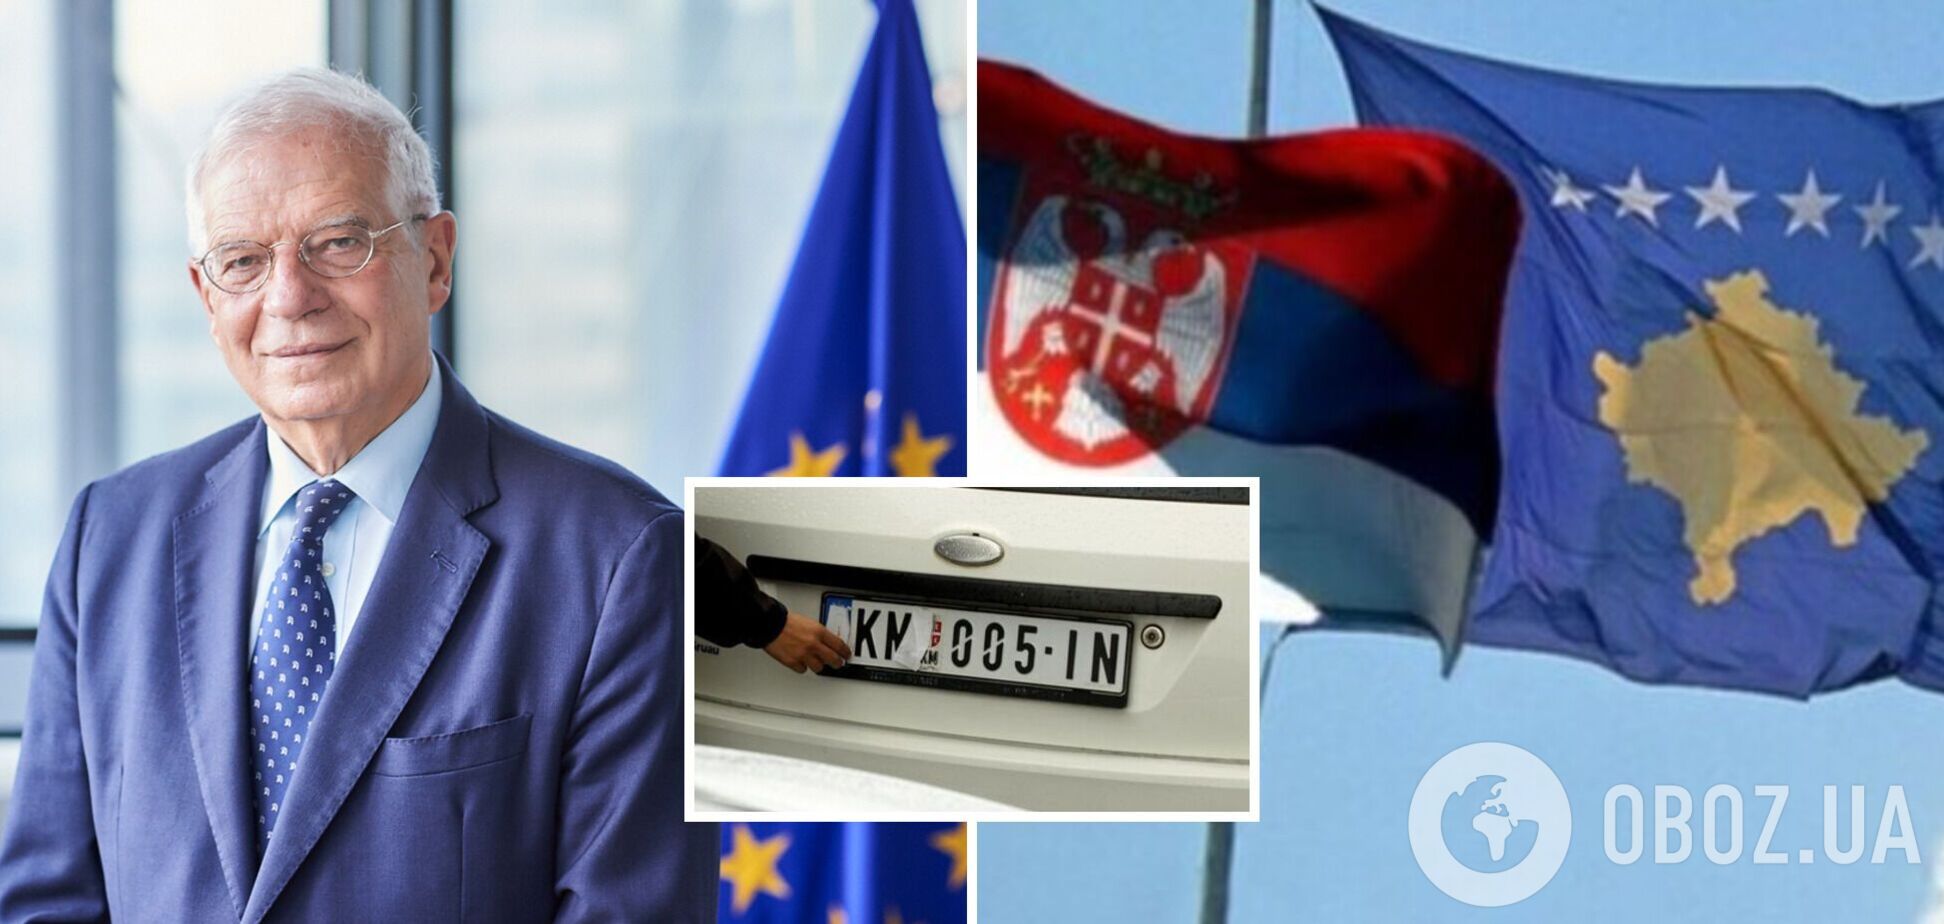 Сербія і Косово уклали угоду щодо визнання автомобільних номерів: що відомо